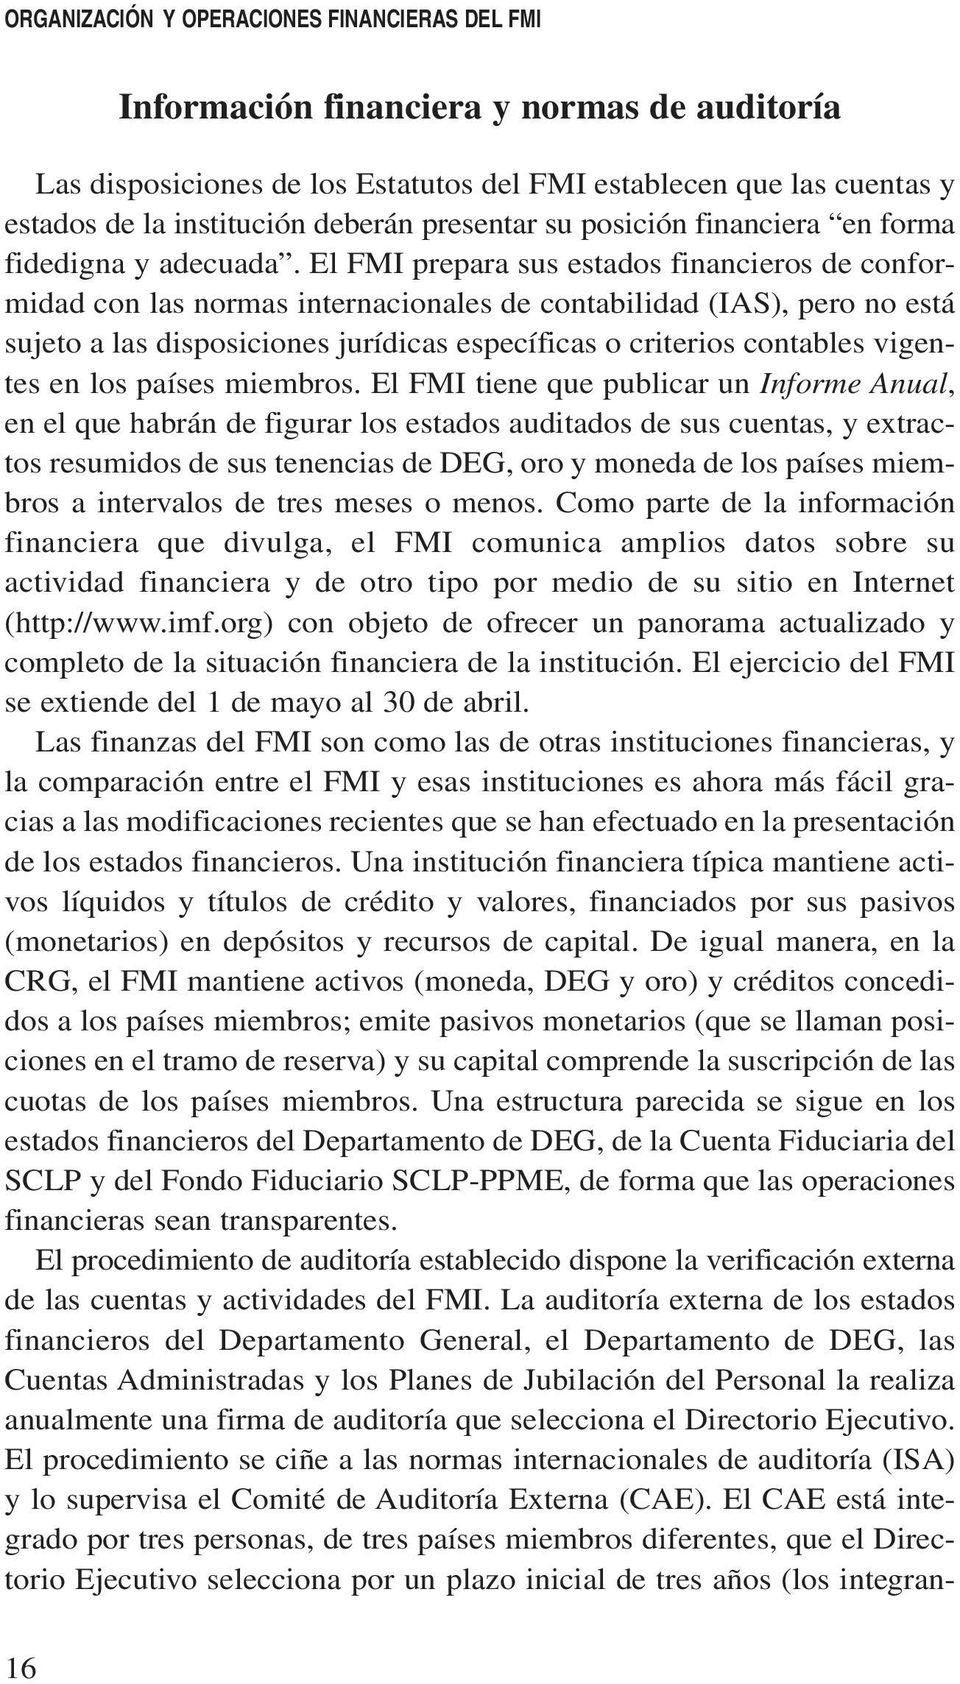 El FMI prepara sus estados financieros de conformidad con las normas internacionales de contabilidad (IAS), pero no está sujeto a las disposiciones jurídicas específicas o criterios contables